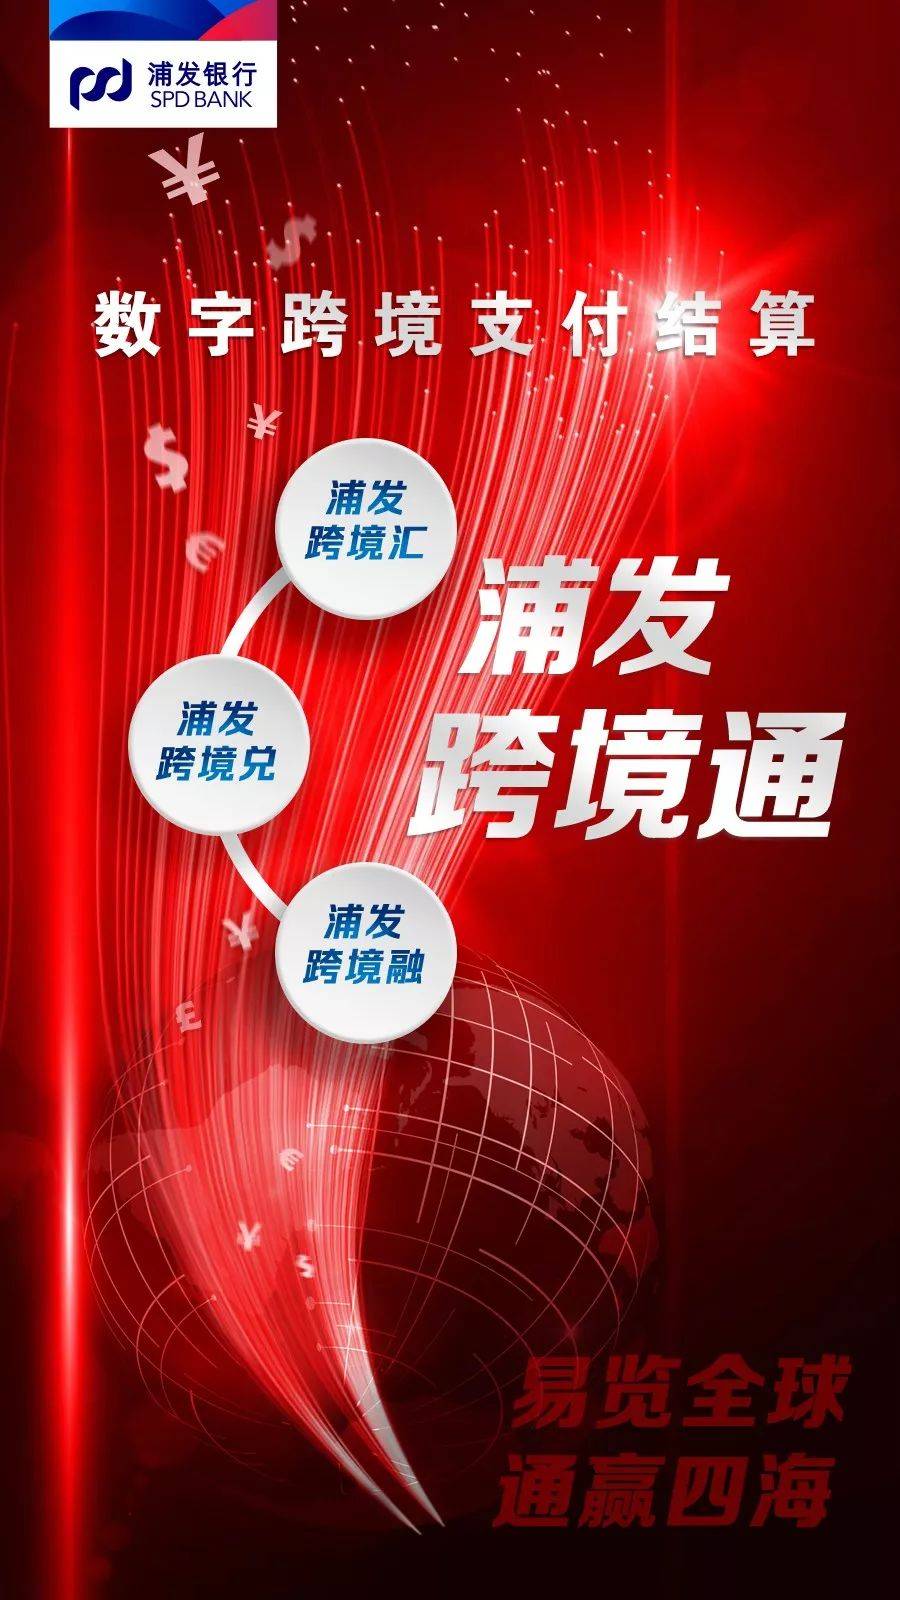 浦发银行发布《进博会综合金融服务方案2.0》(上海跨境通)